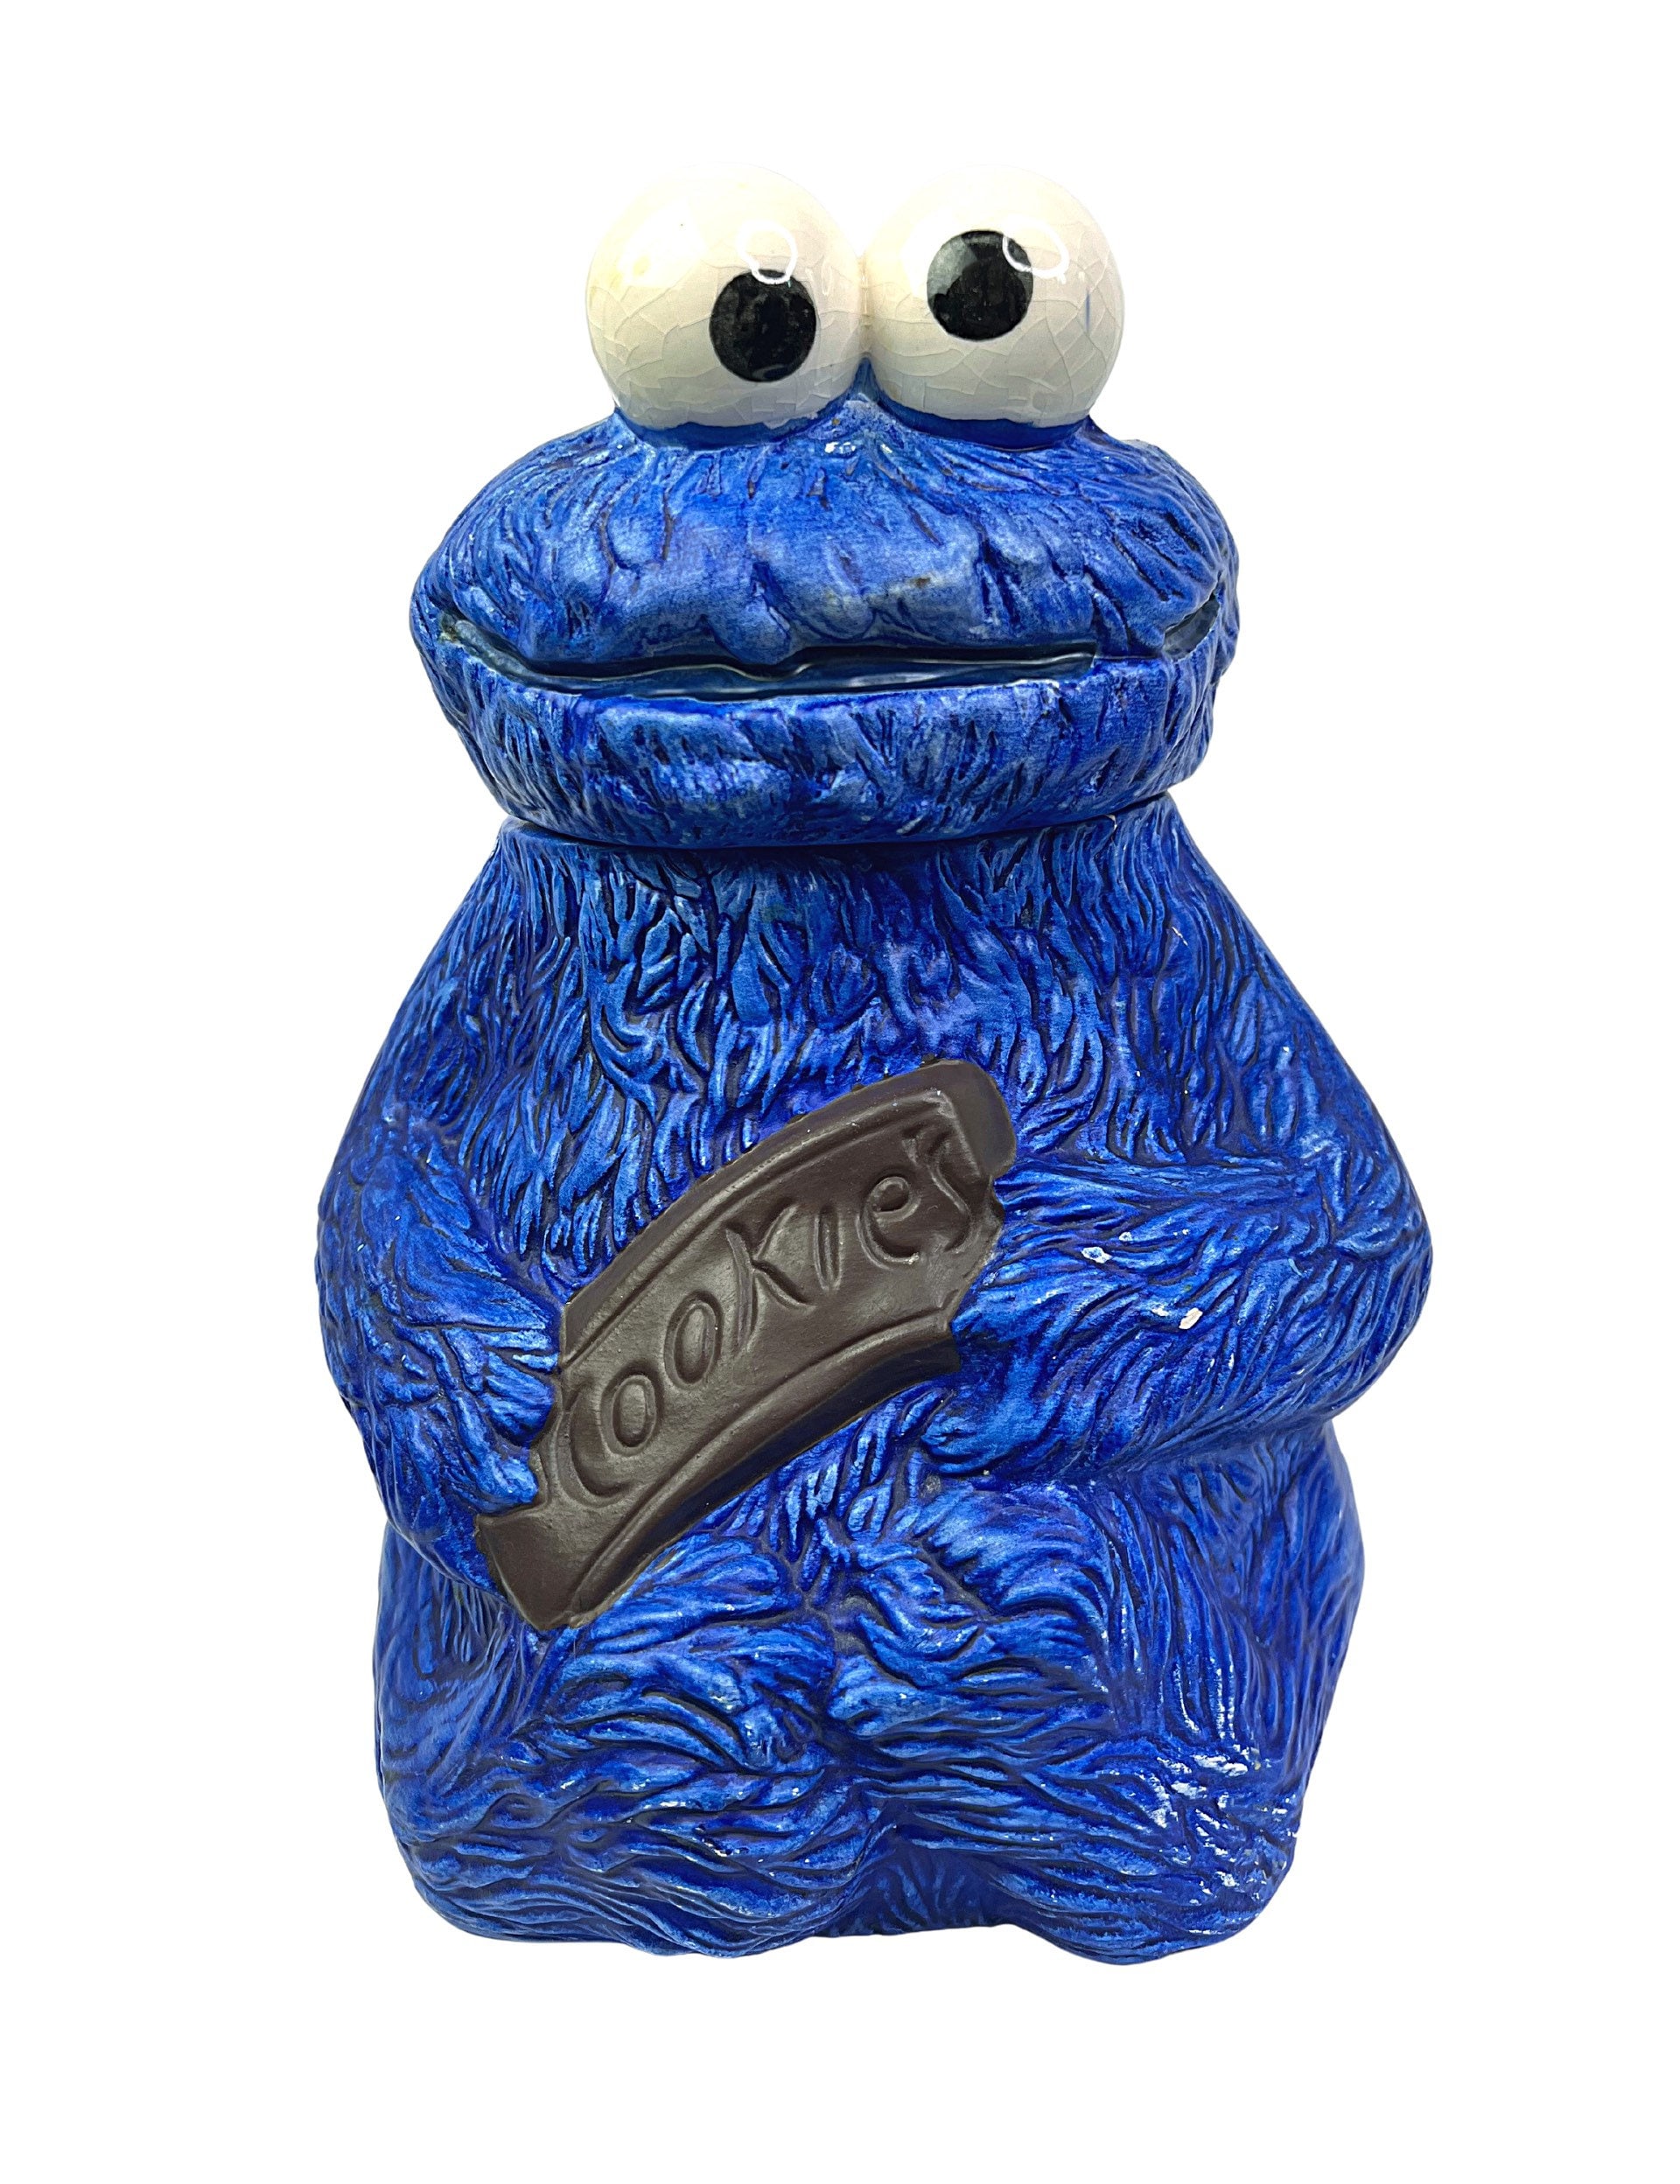 1970s Cookie Monster Sesame Street Ceramic Cookie Jar 